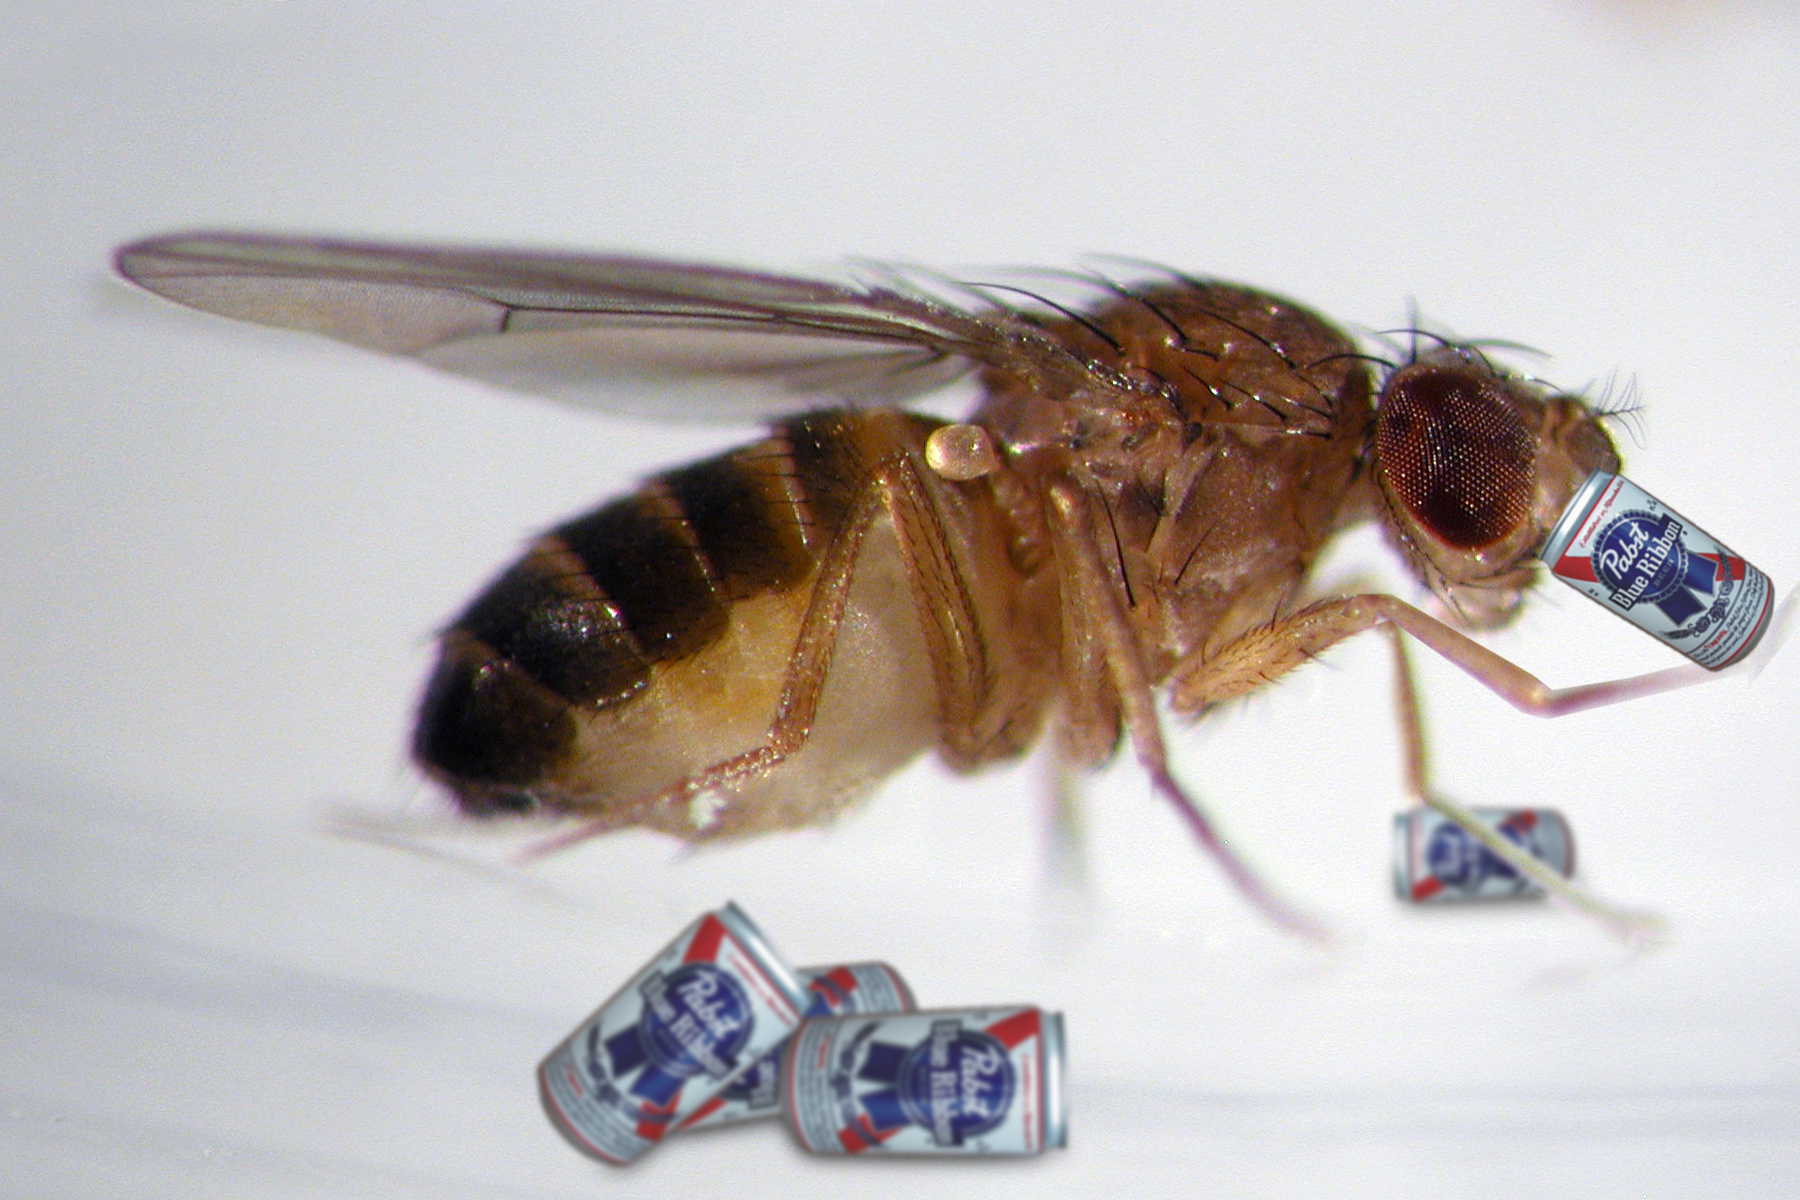 Flies develop homosexual tendencies while drunk.